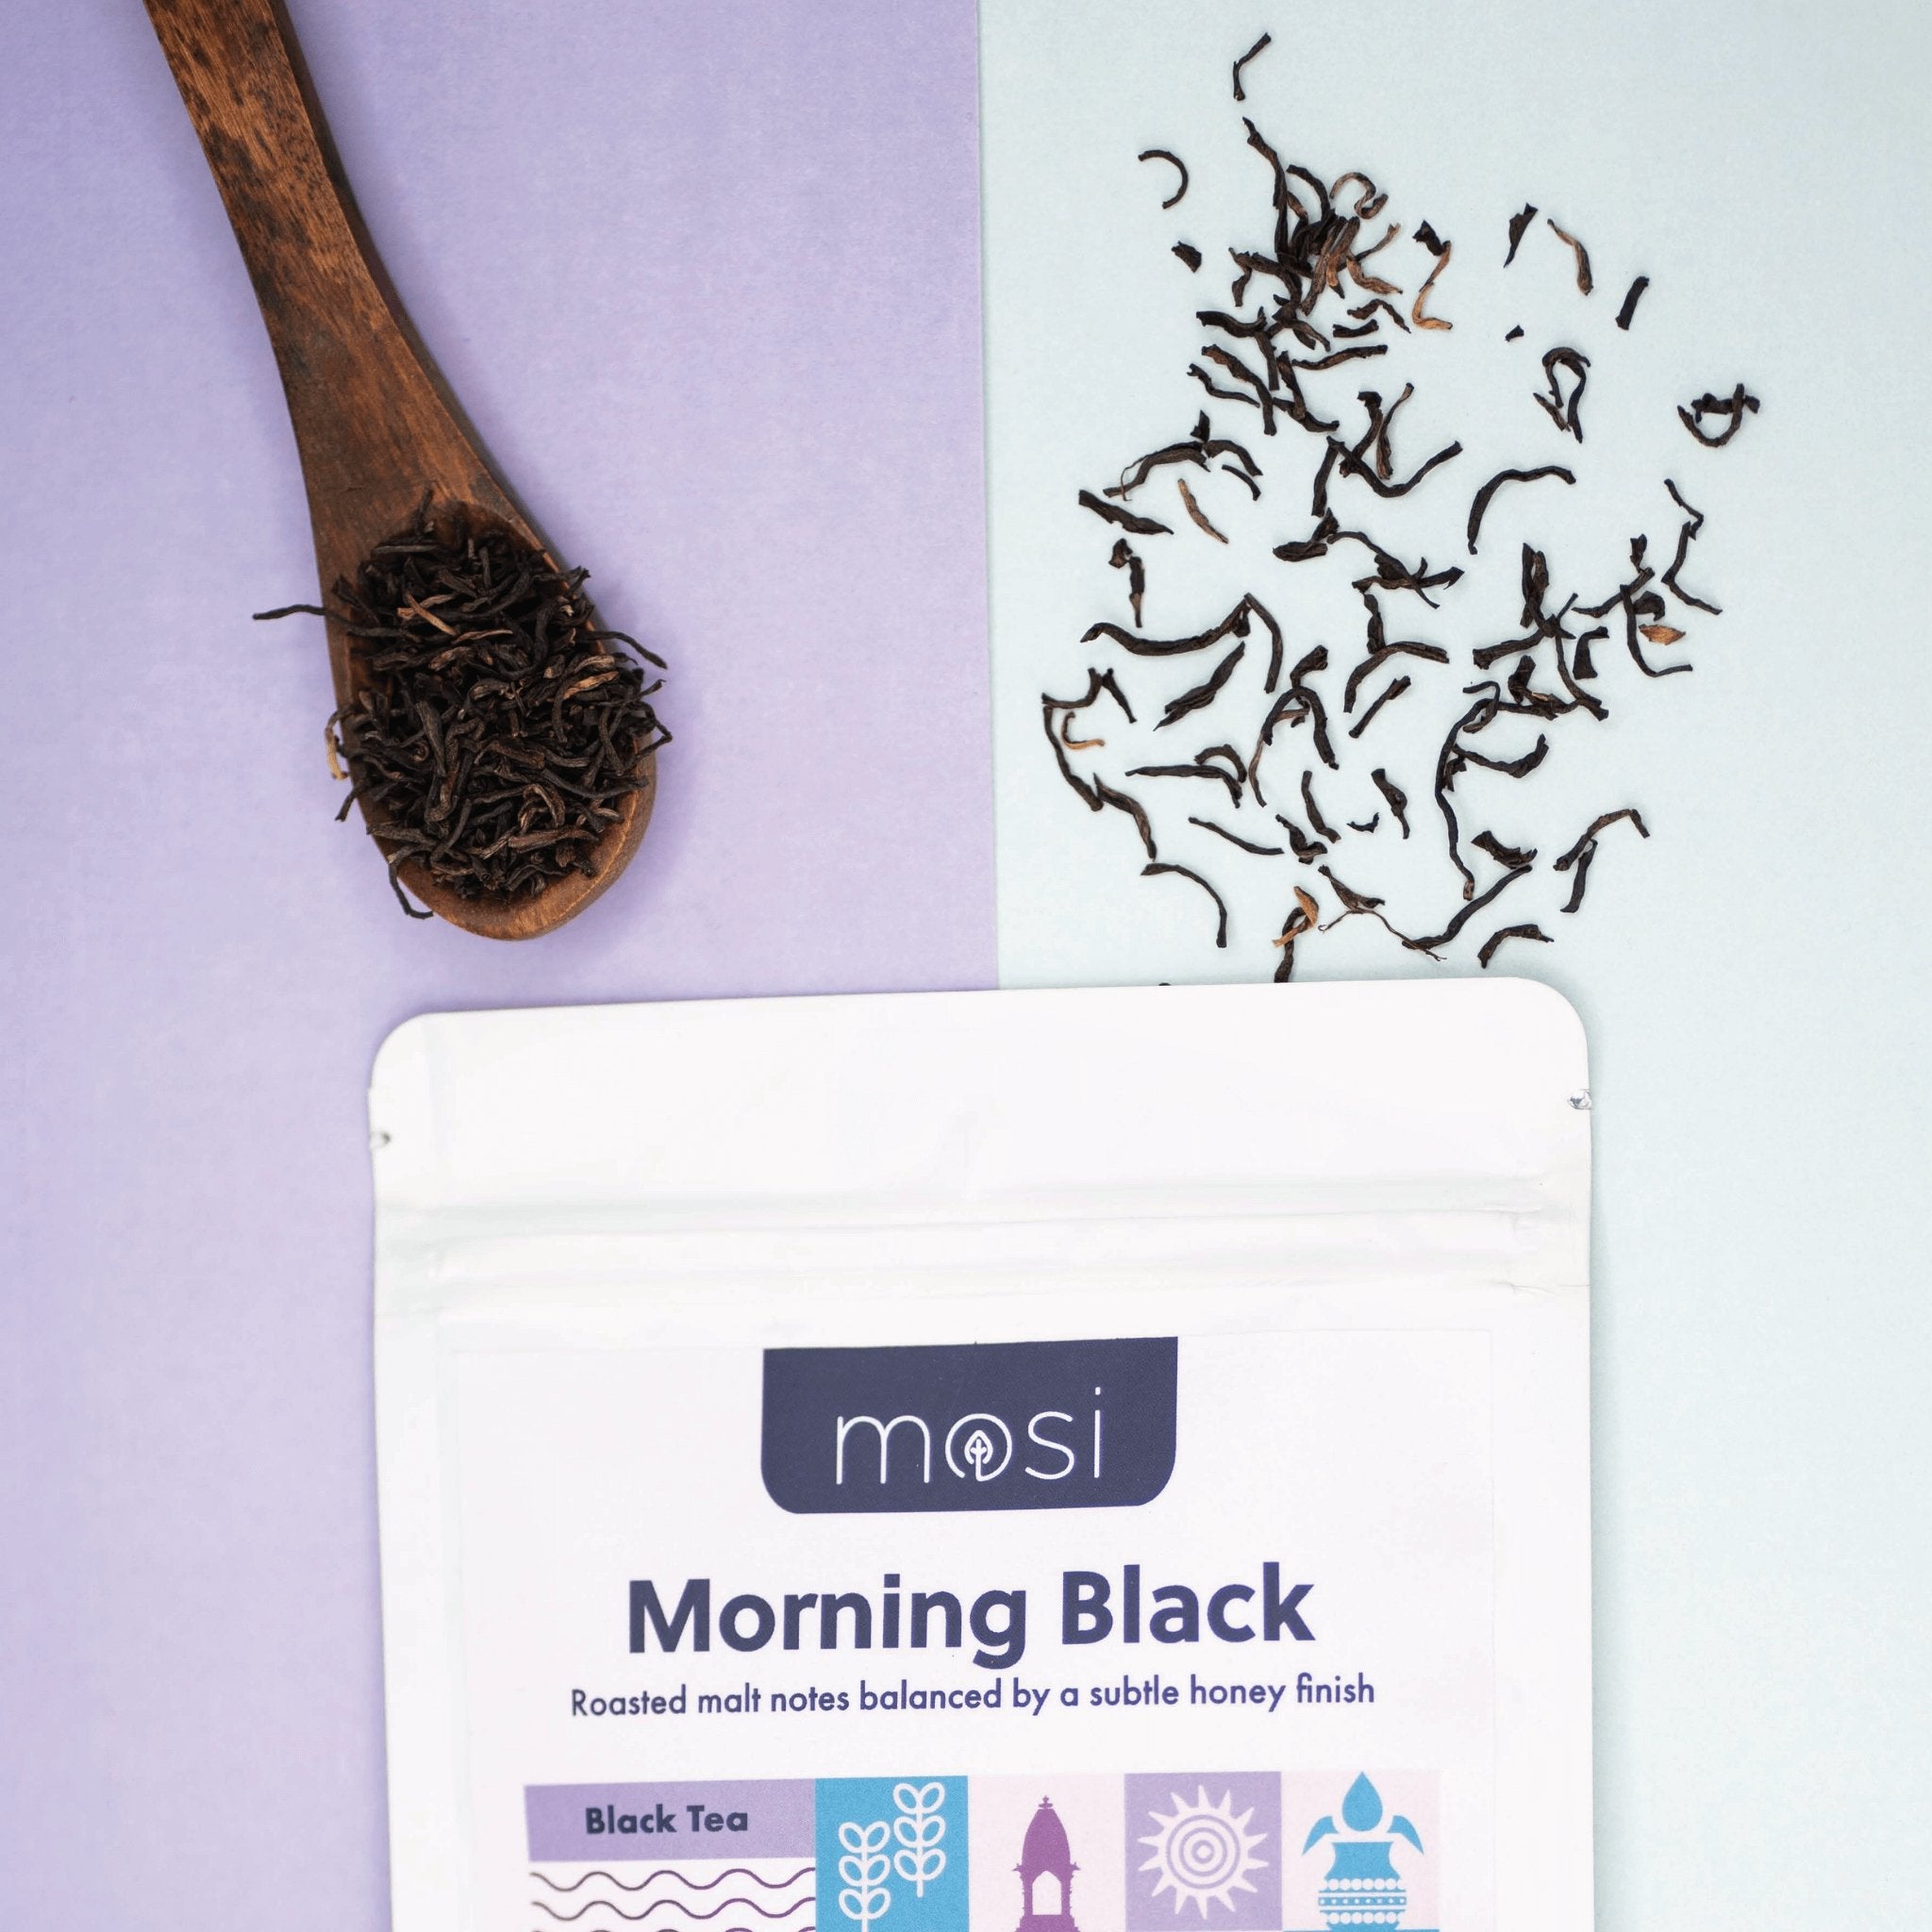 Morning Black - Mosi Tea